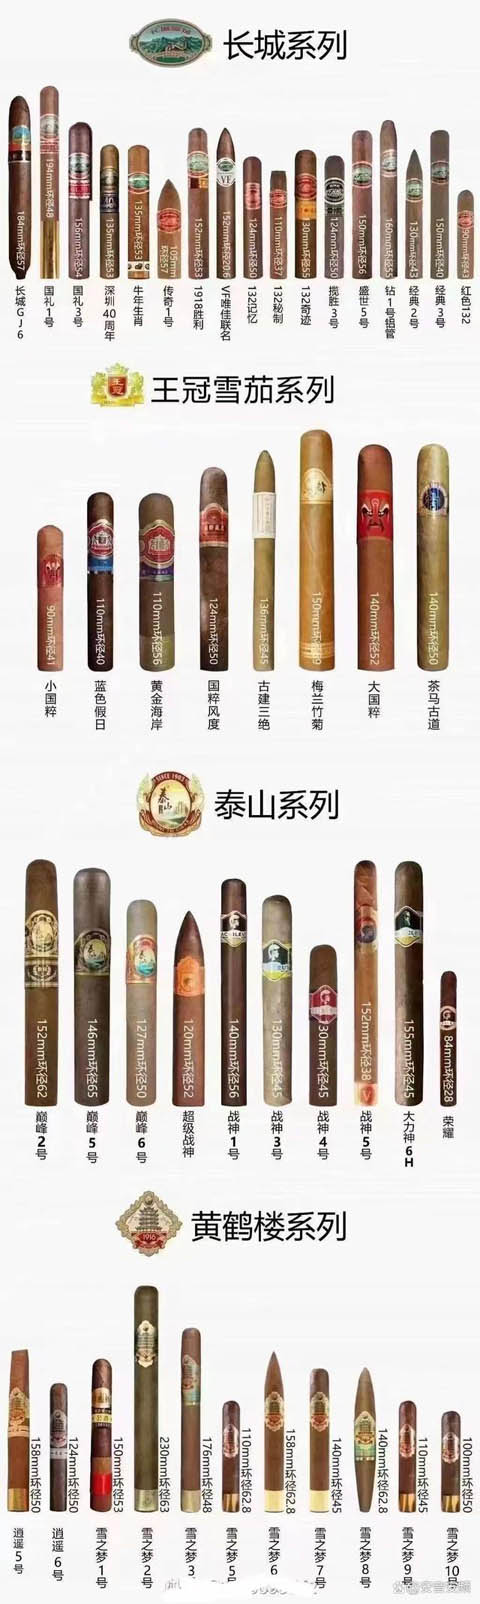 国产四大品牌雪茄常规尺寸大小